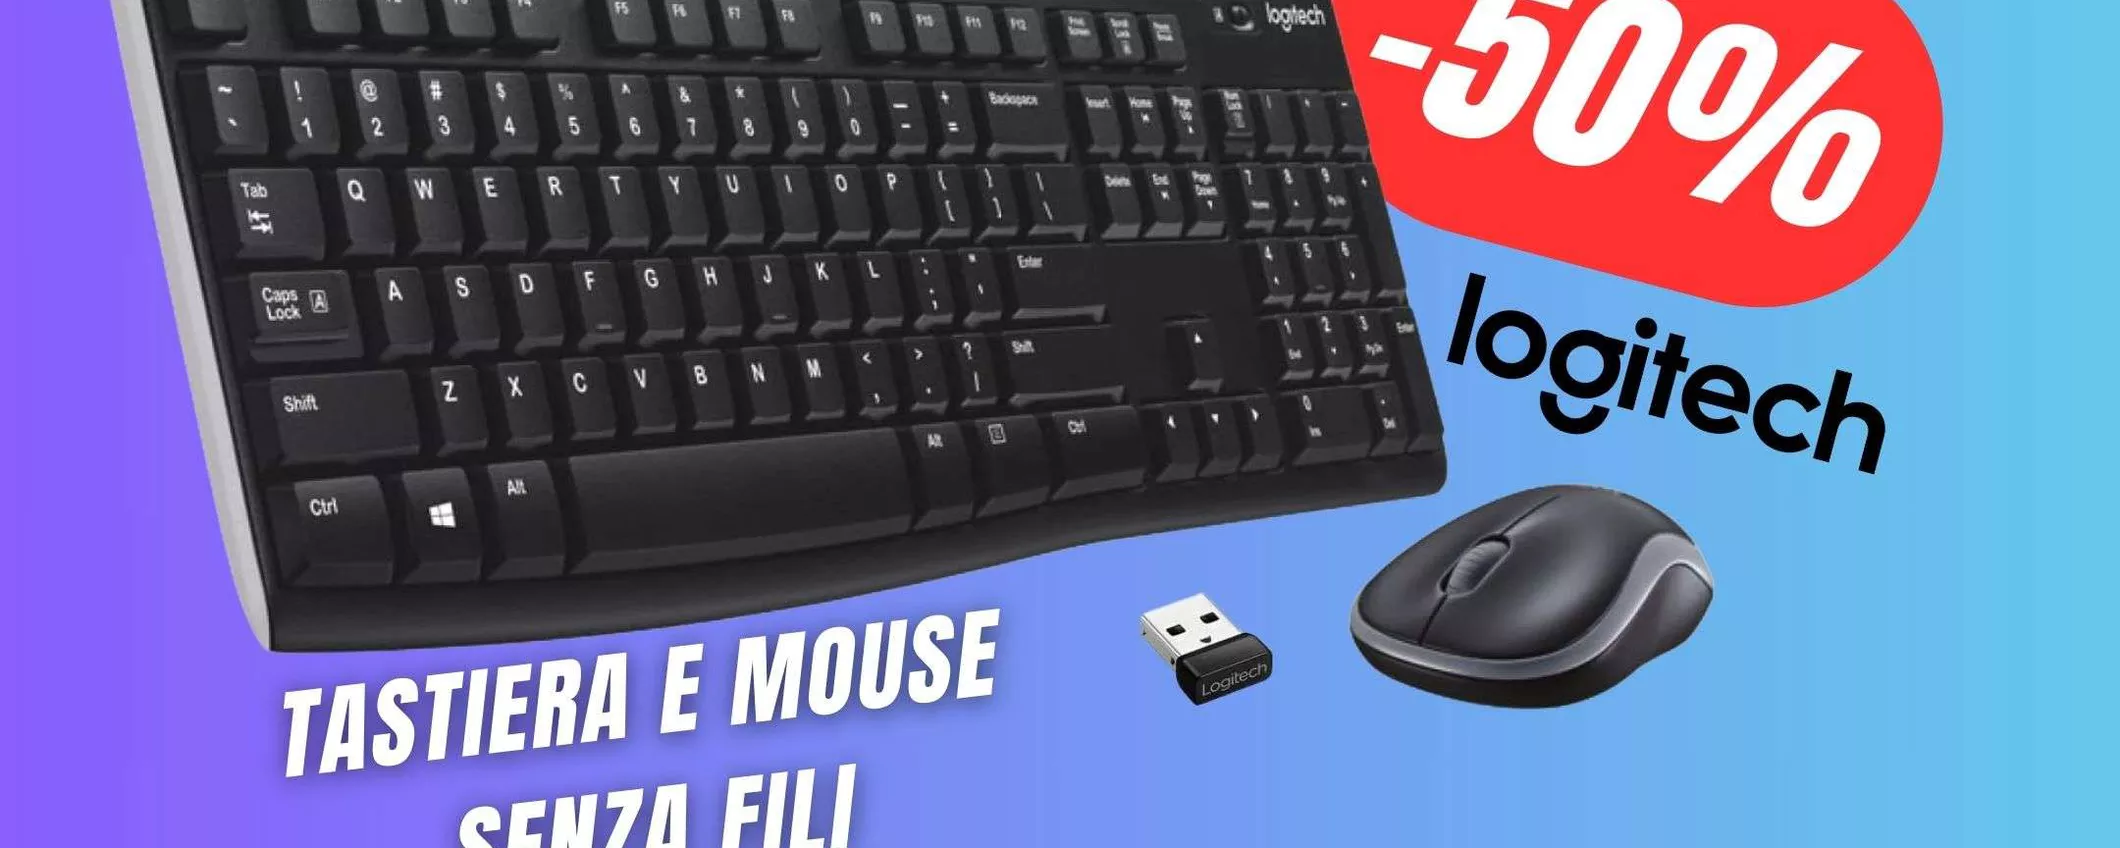 Tastiera e Mouse SENZA FILI di Logitech a soli 24€ su Amazon!